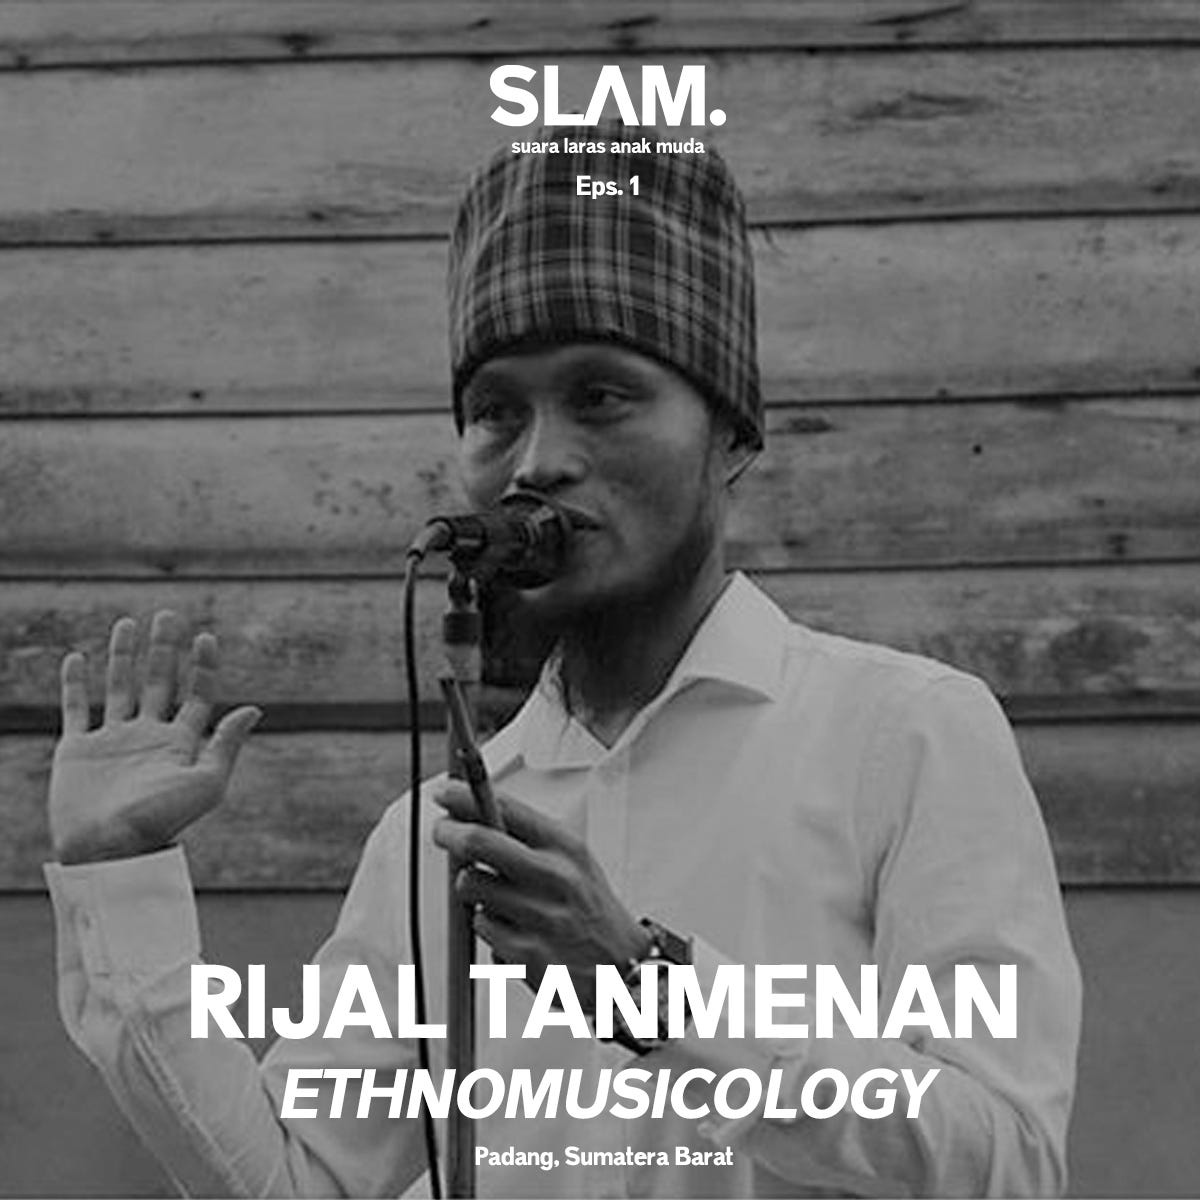 Belajar Meneliti dan Melebur dengan Masyarakat dari Perspektif Etnomusikolog Rijal Tanmenan